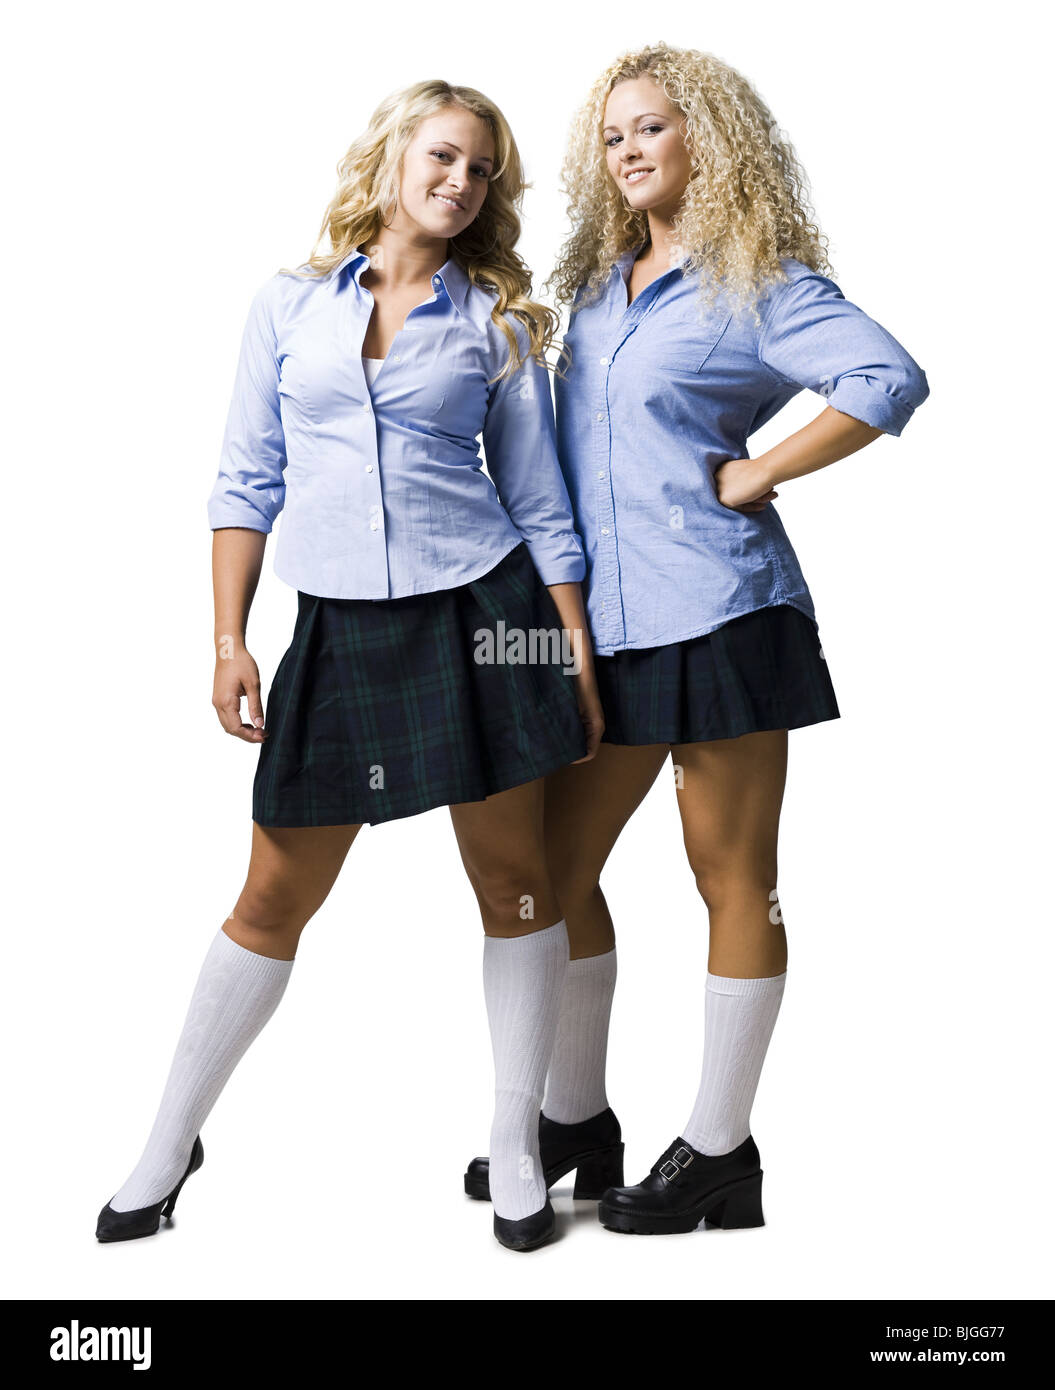 Women Dressed As School Girls